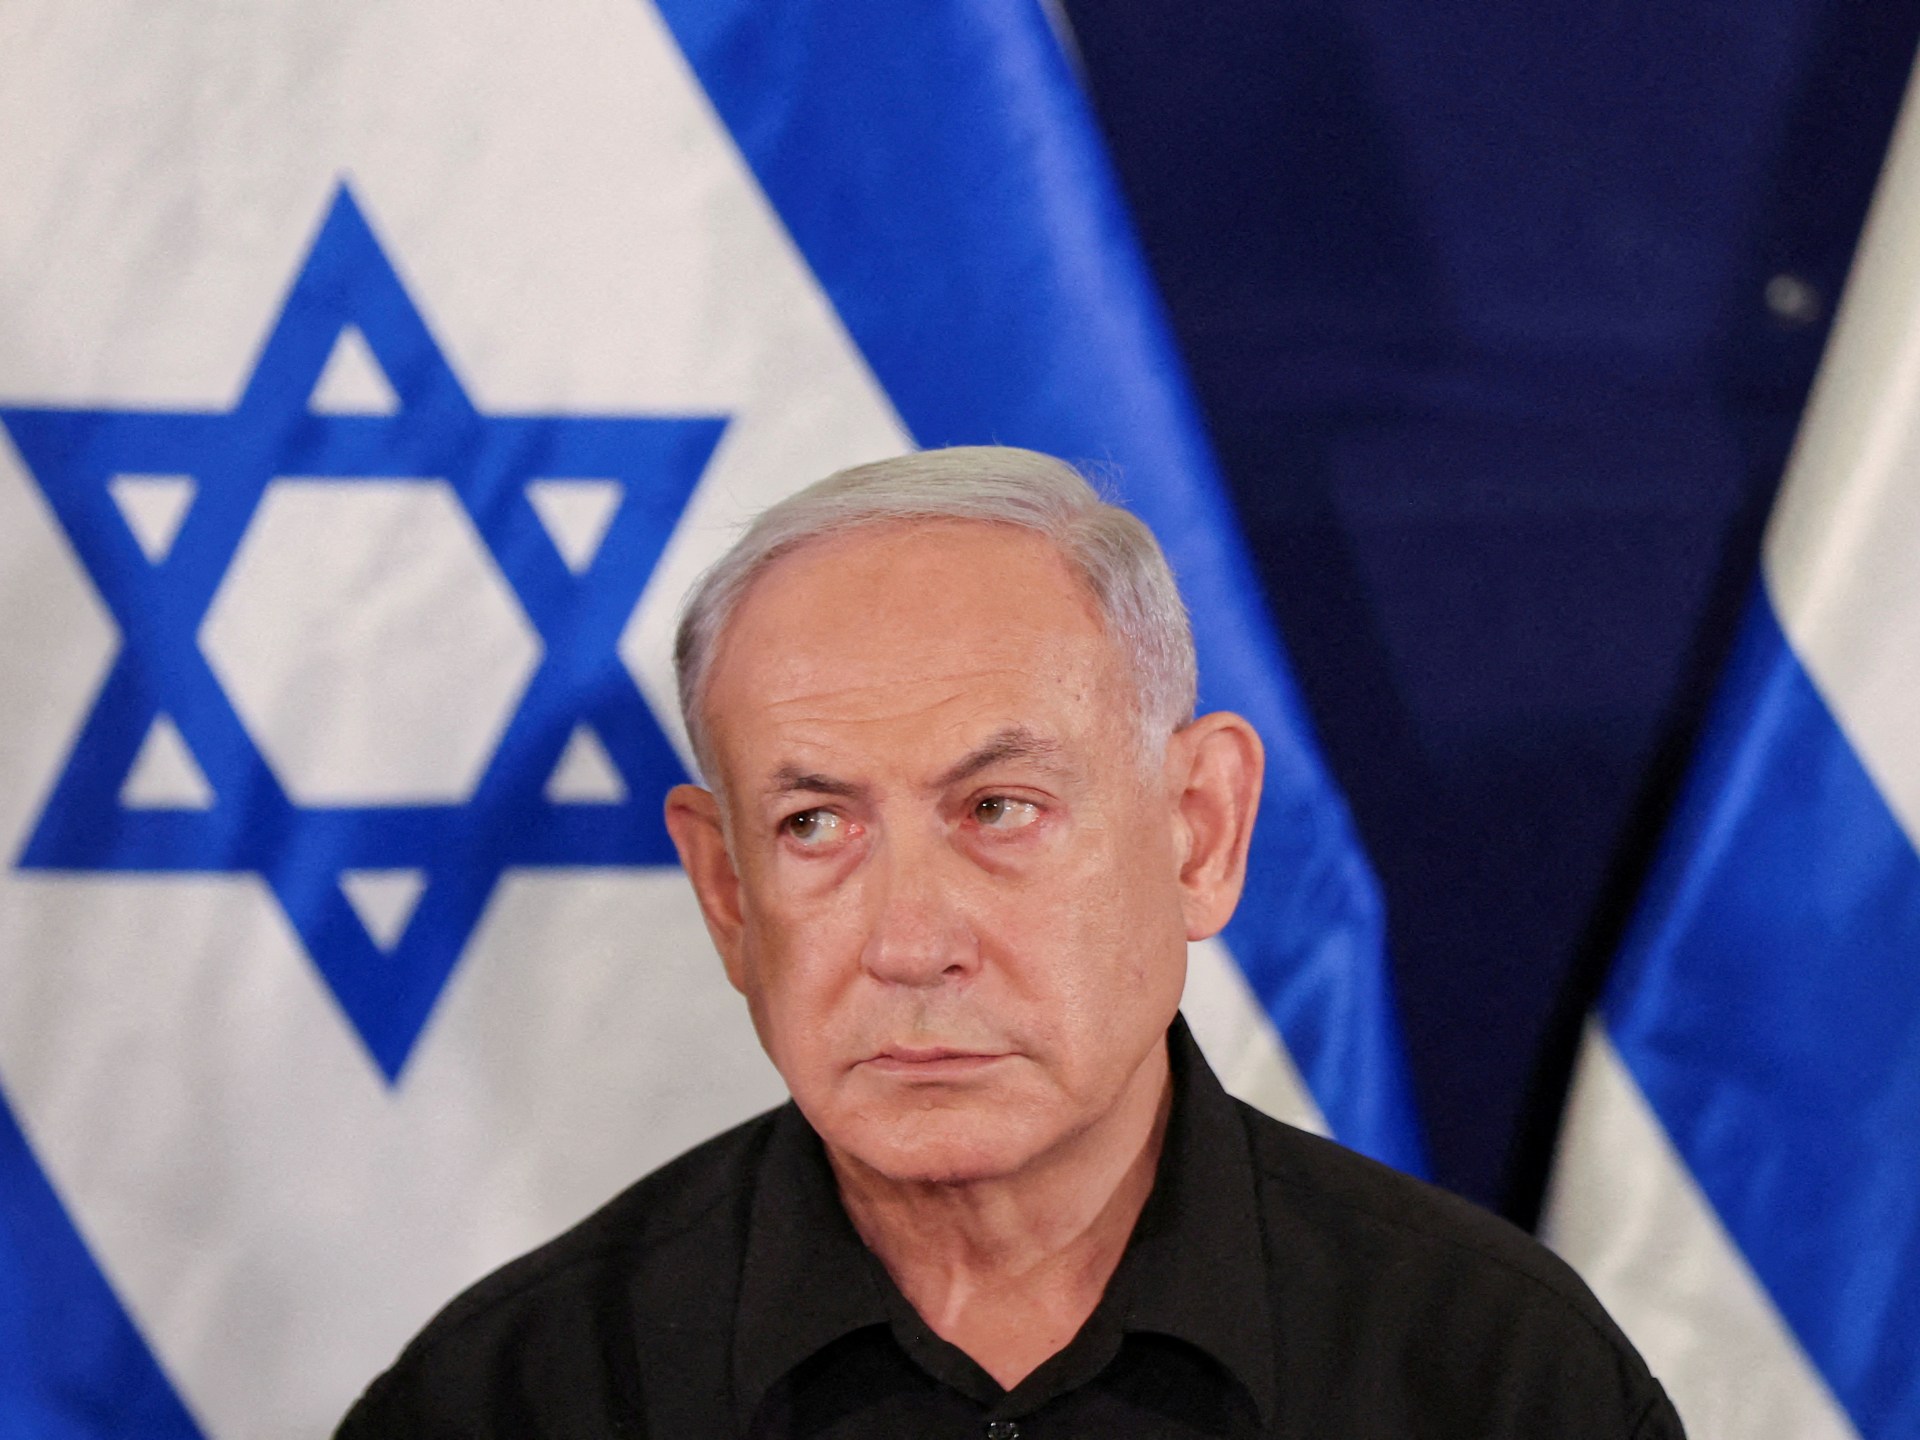 “الكثير من السخط”: نتنياهو وحده في رئاسة الوزراء في إسرائيل في زمن الحرب |  الصراع الإسرائيلي الفلسطيني